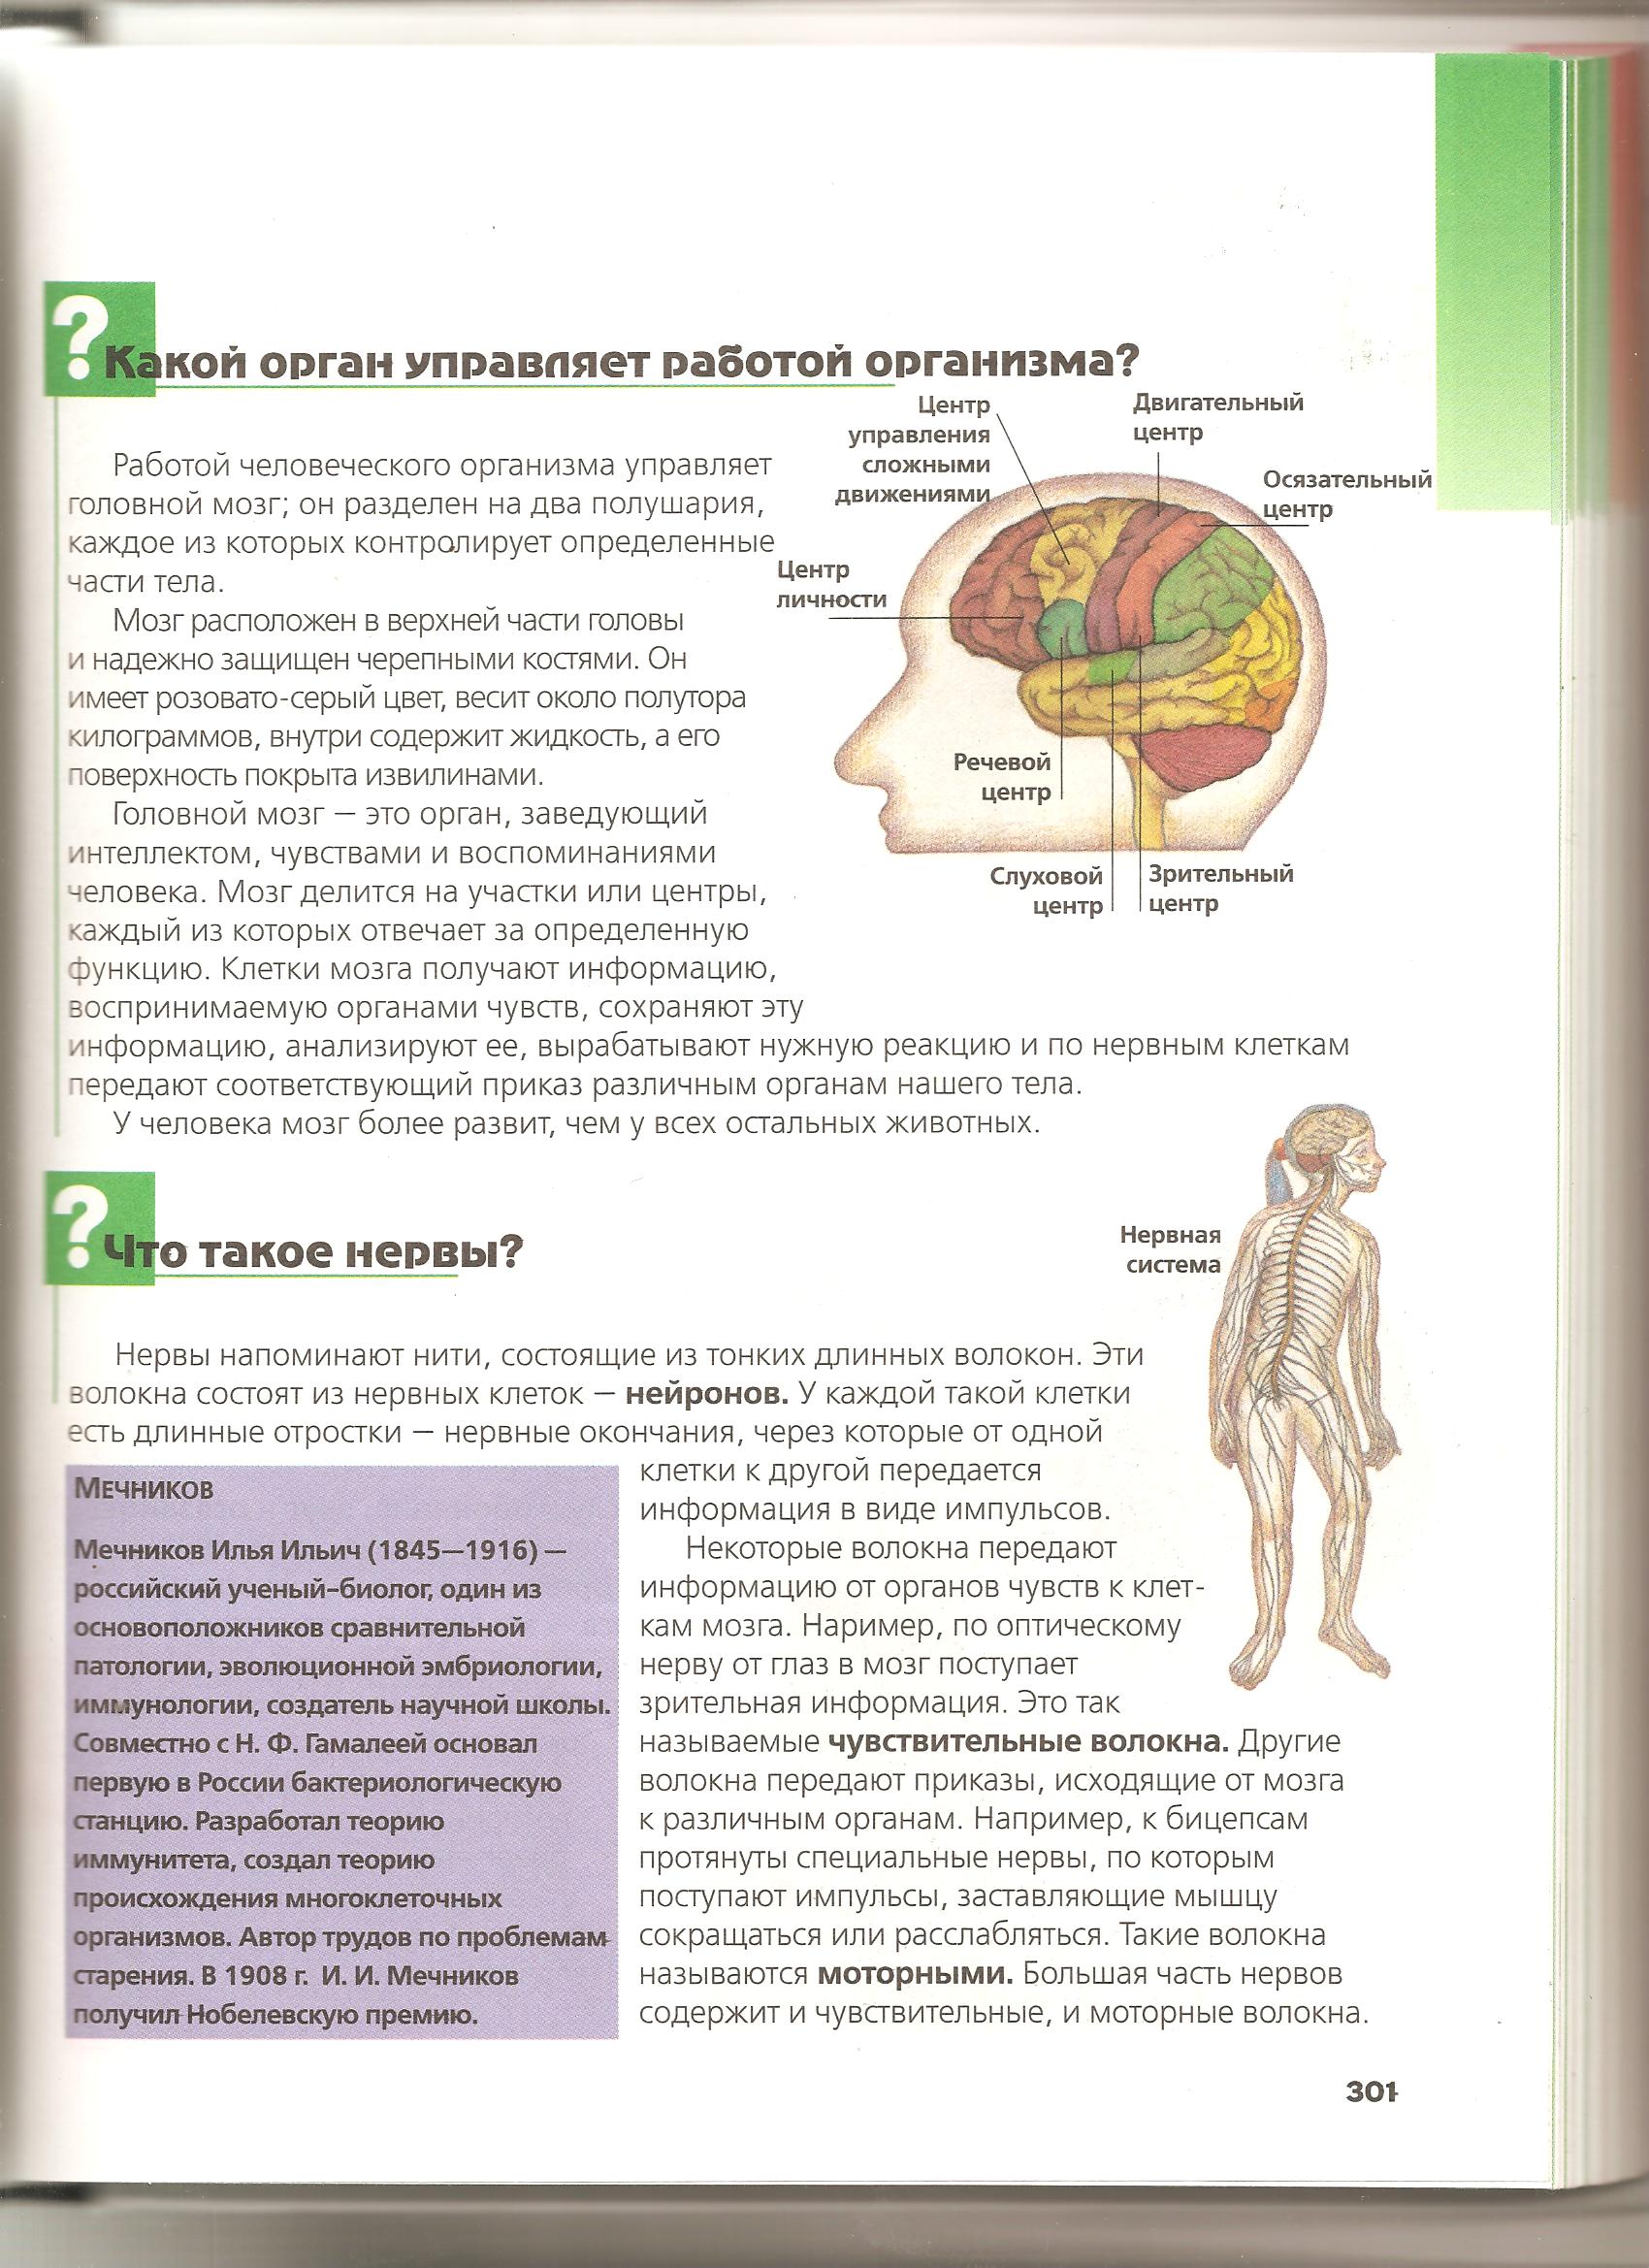 Нервная система и её функции.